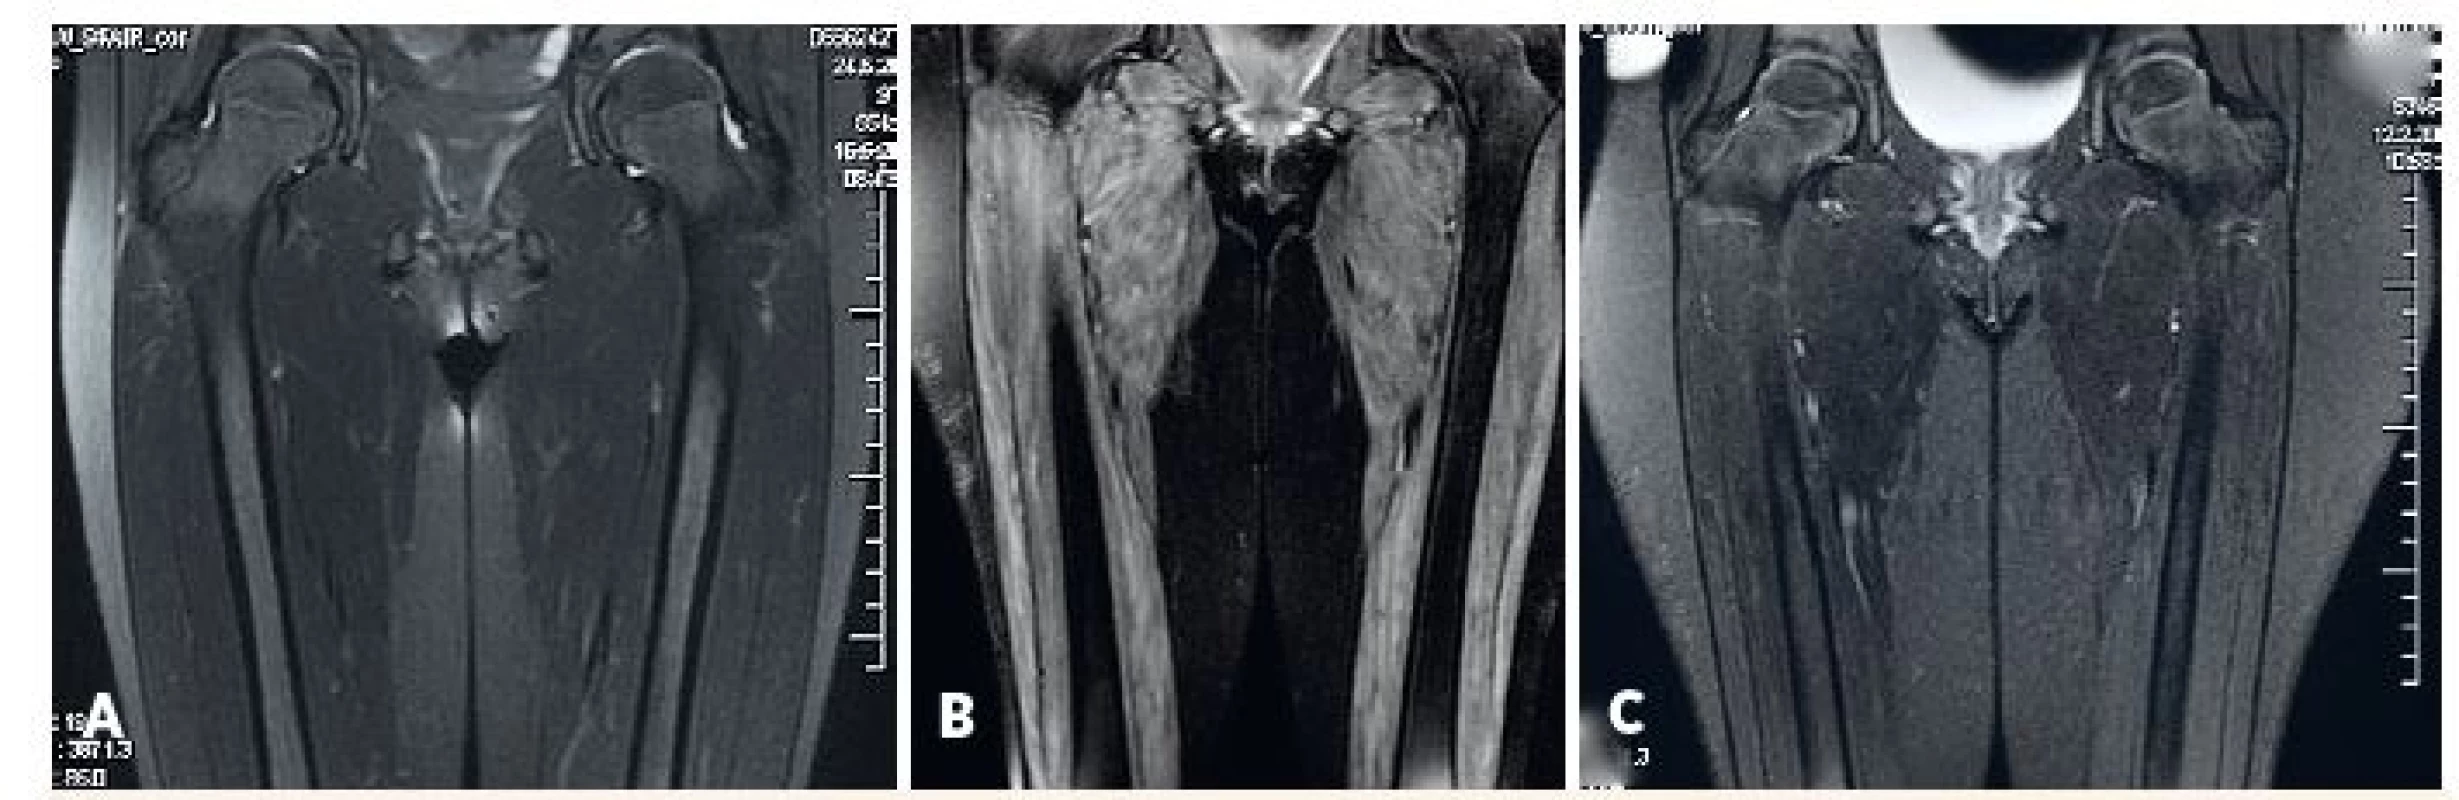 MRI svalov dolného pletenca a stehna.<br>
A) fyziologický nález u pacientky s amyopatickou formou JDM, B) patologický nález u pacientky s floridnou JDM, C) regresia patologických zmien u rovnakej pacientky po liečbe.<br>
Fig. 3. MRI of lower girdle and thigh muscles.<br>
A) physiological findings in amyopathic JDM, B) pahtological findings in active JDM (edema of muscle and subcutis),
C) reversal of pathological findings in the same patient after treatment.